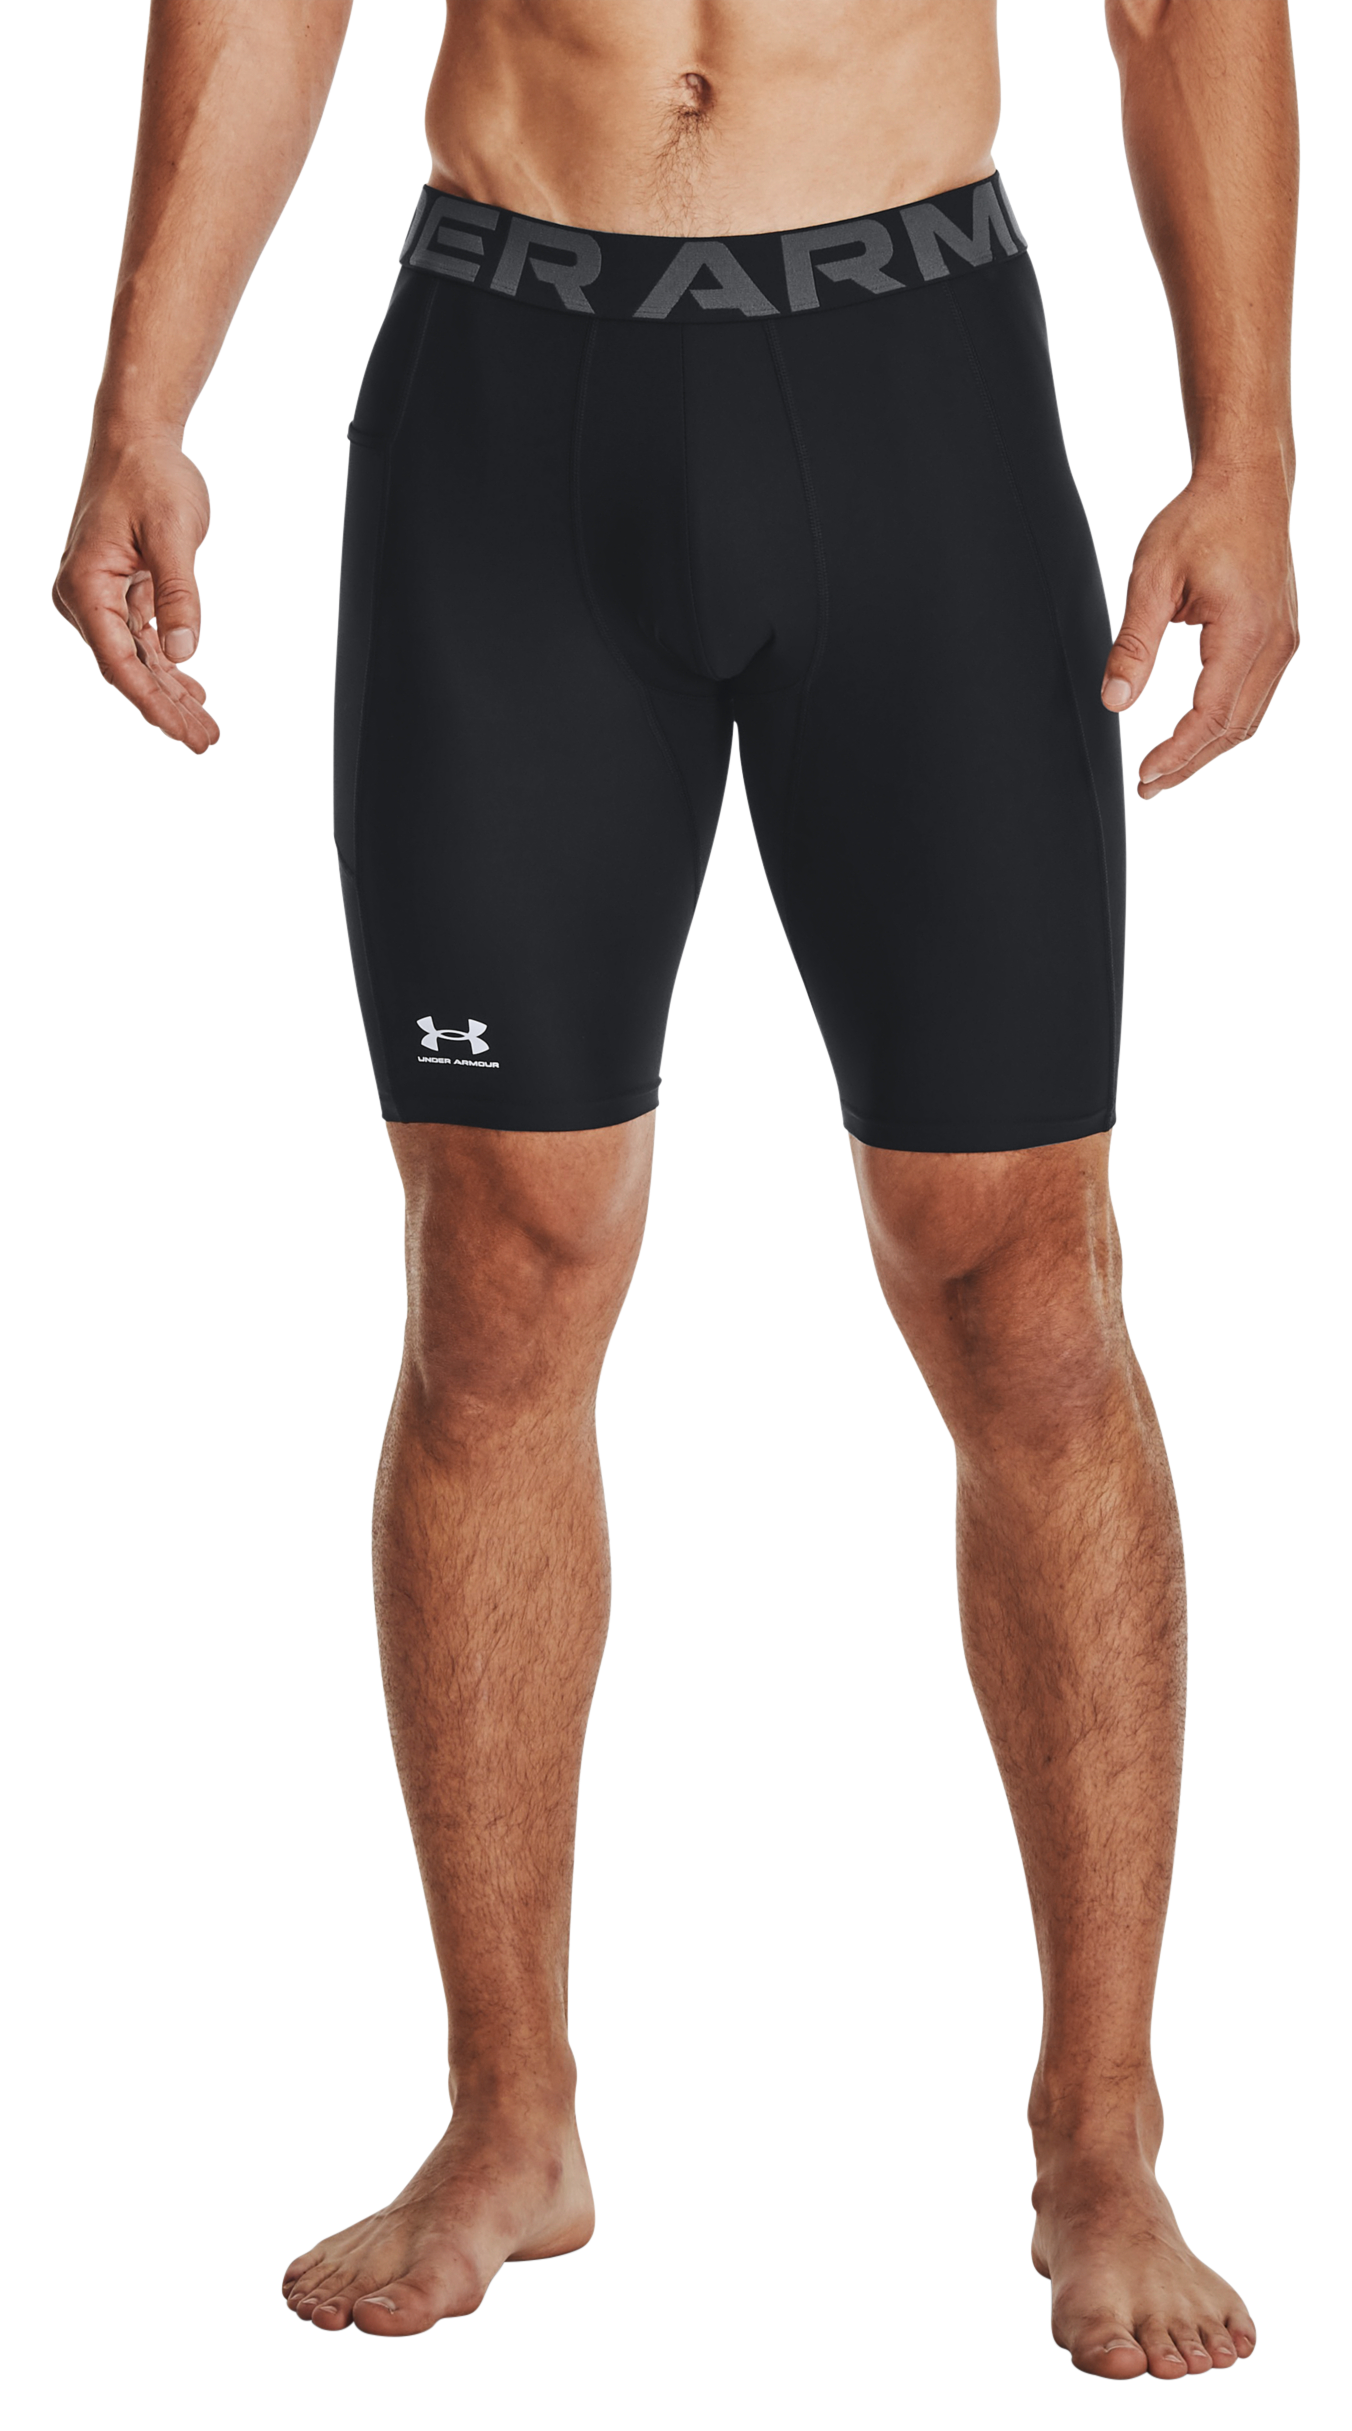 Under Armour HeatGear Pocket Long Shorts for Men - Black/White - 2XLT